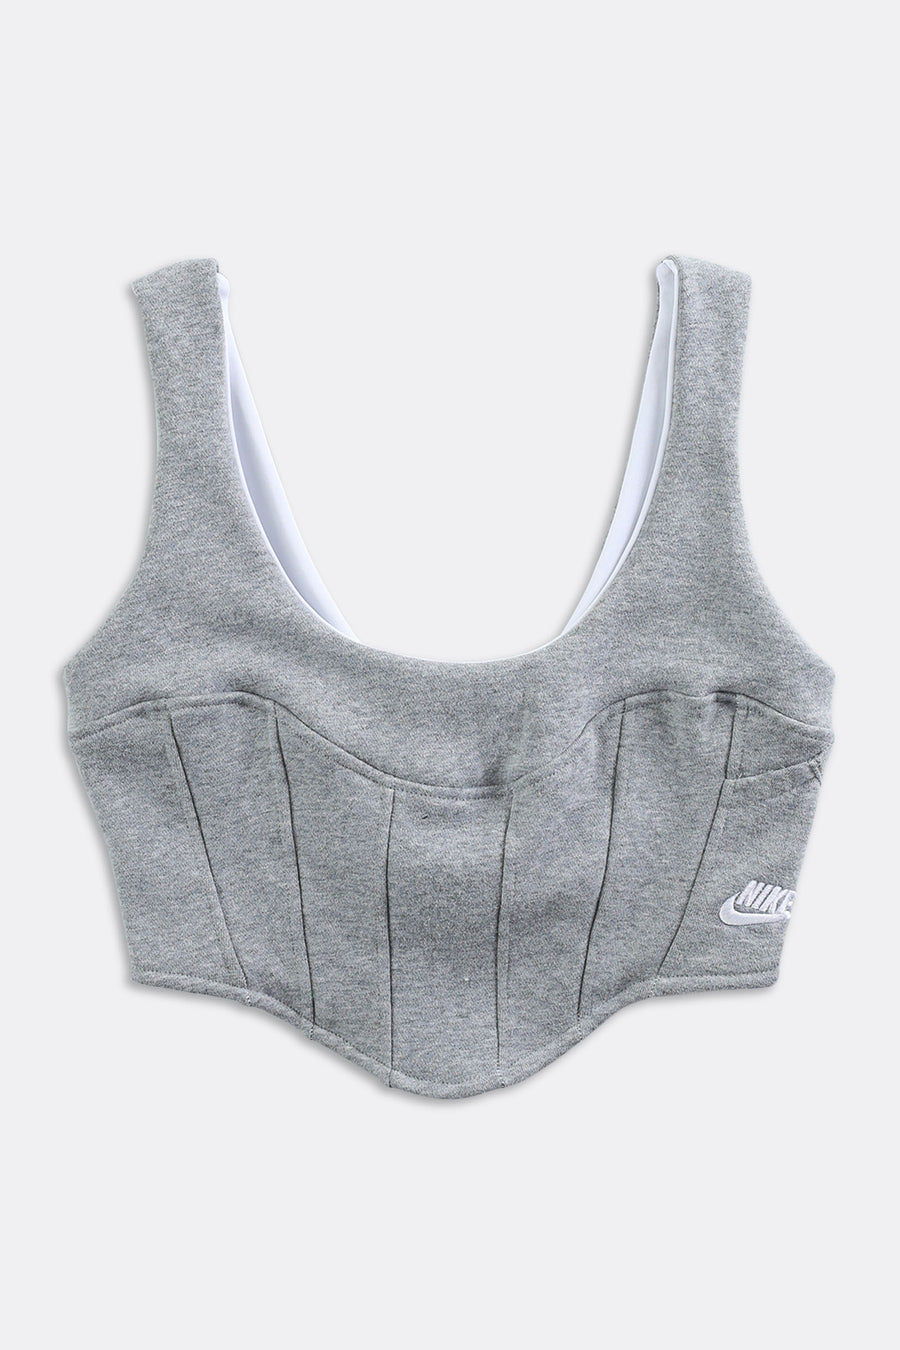 Rework Nike Sweatshirt Bustier - XS, S, M, L, XL, 2XL – Frankie